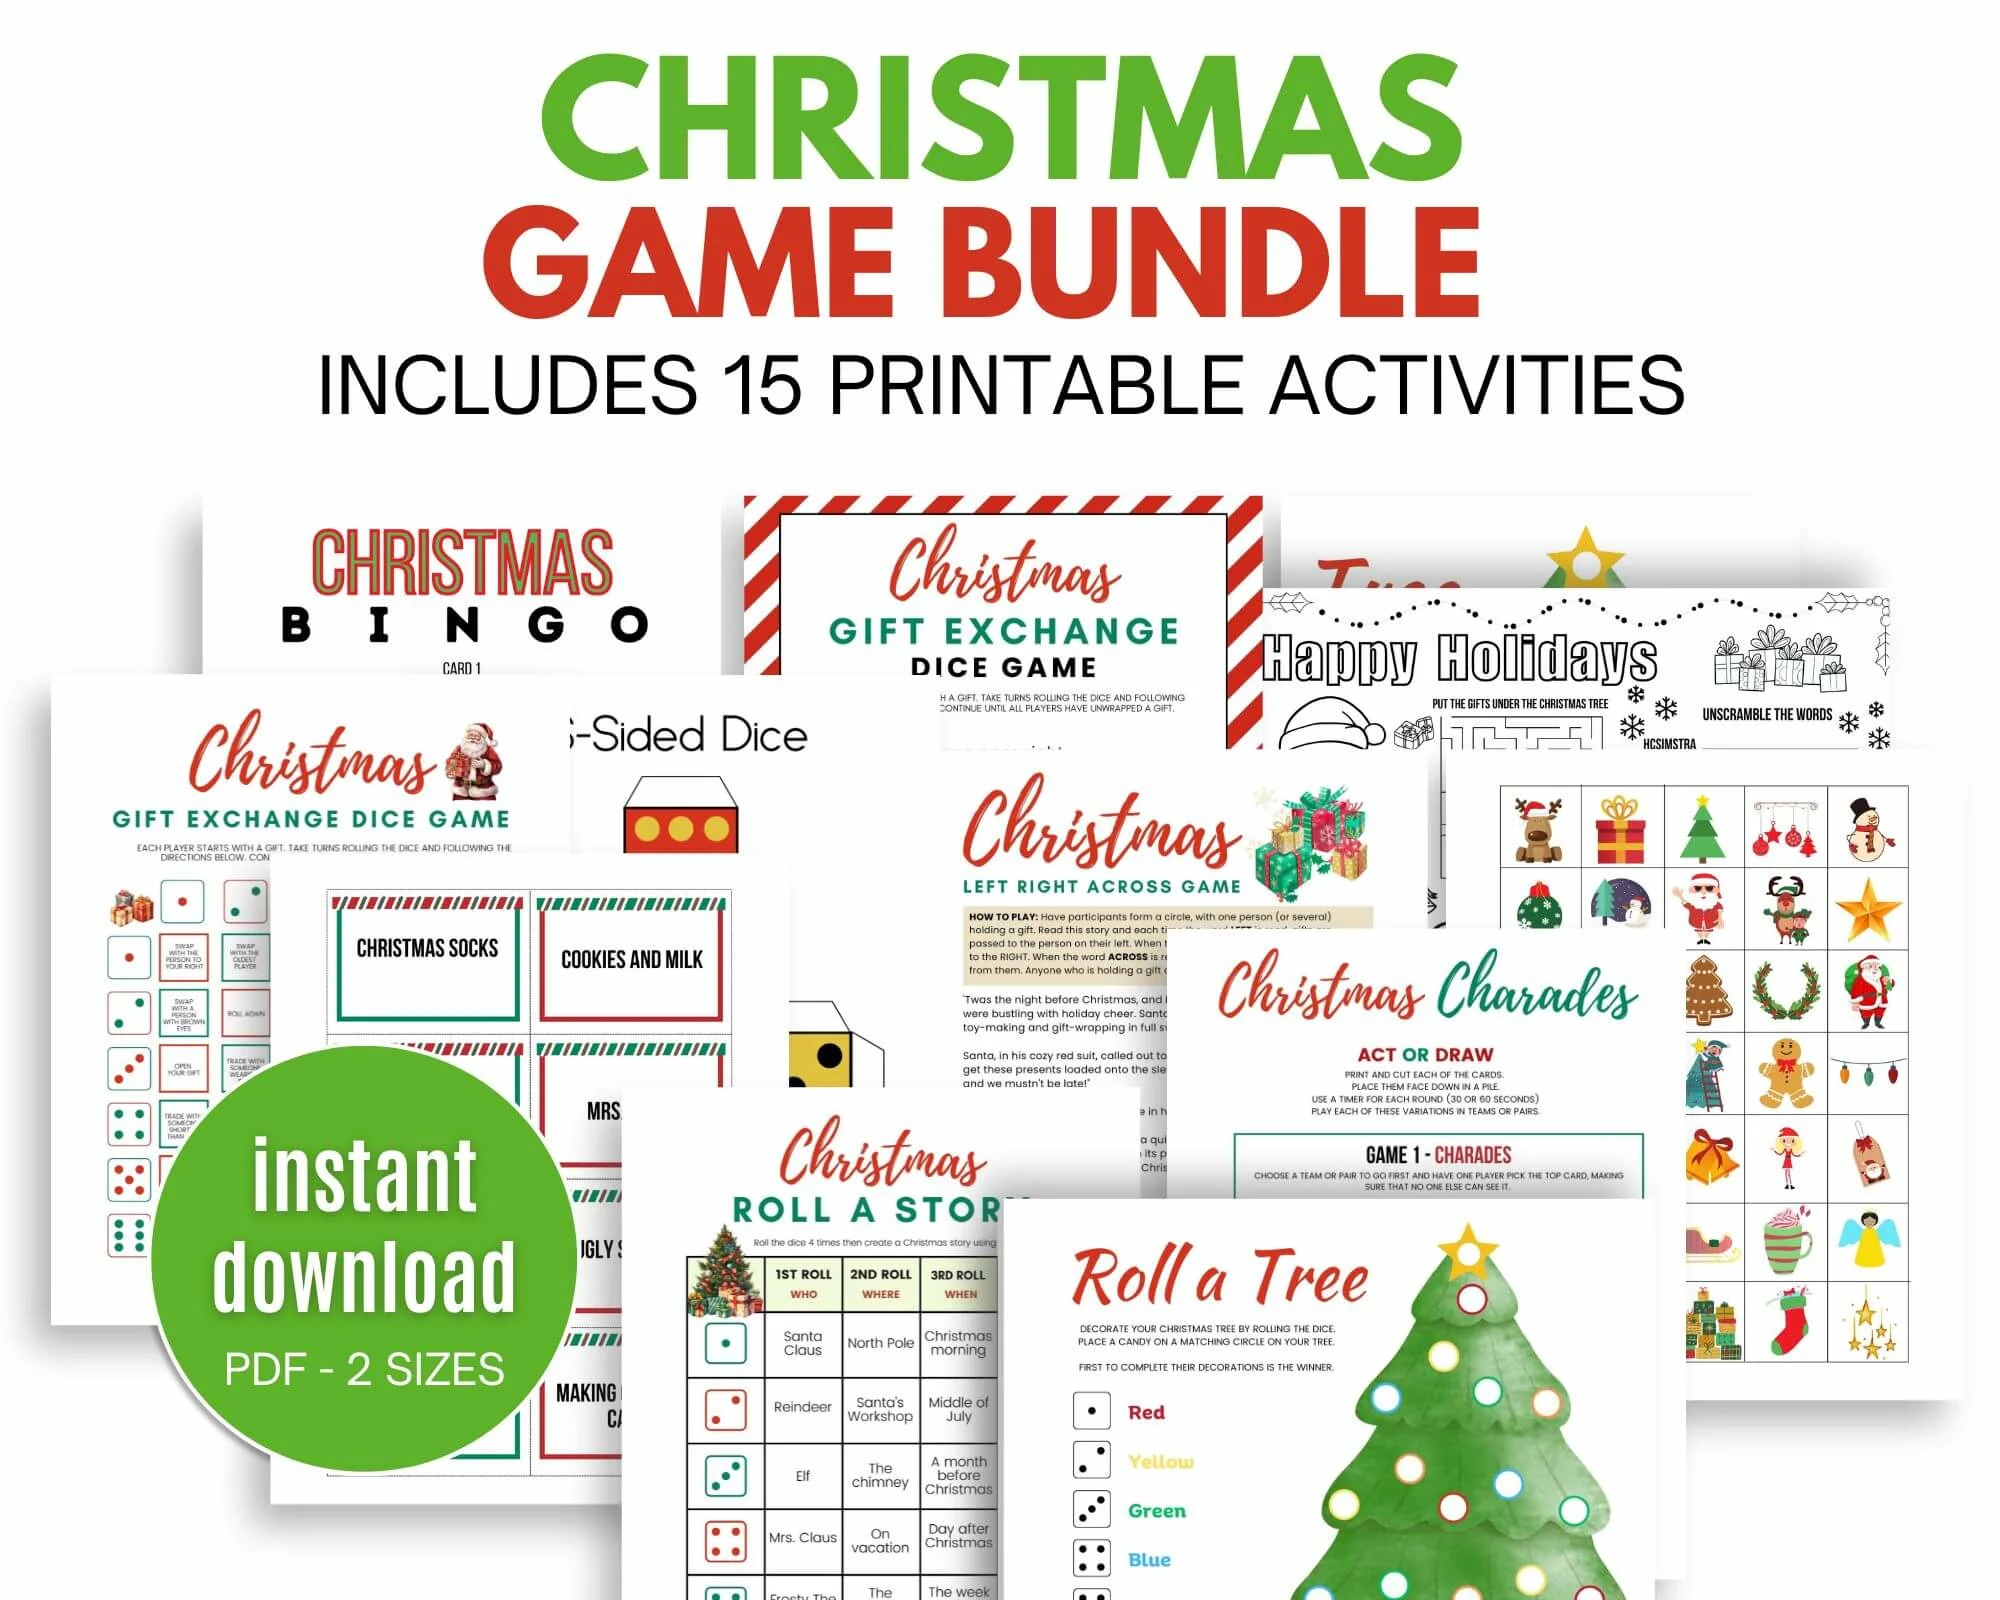 Christmas game bundle sale image.